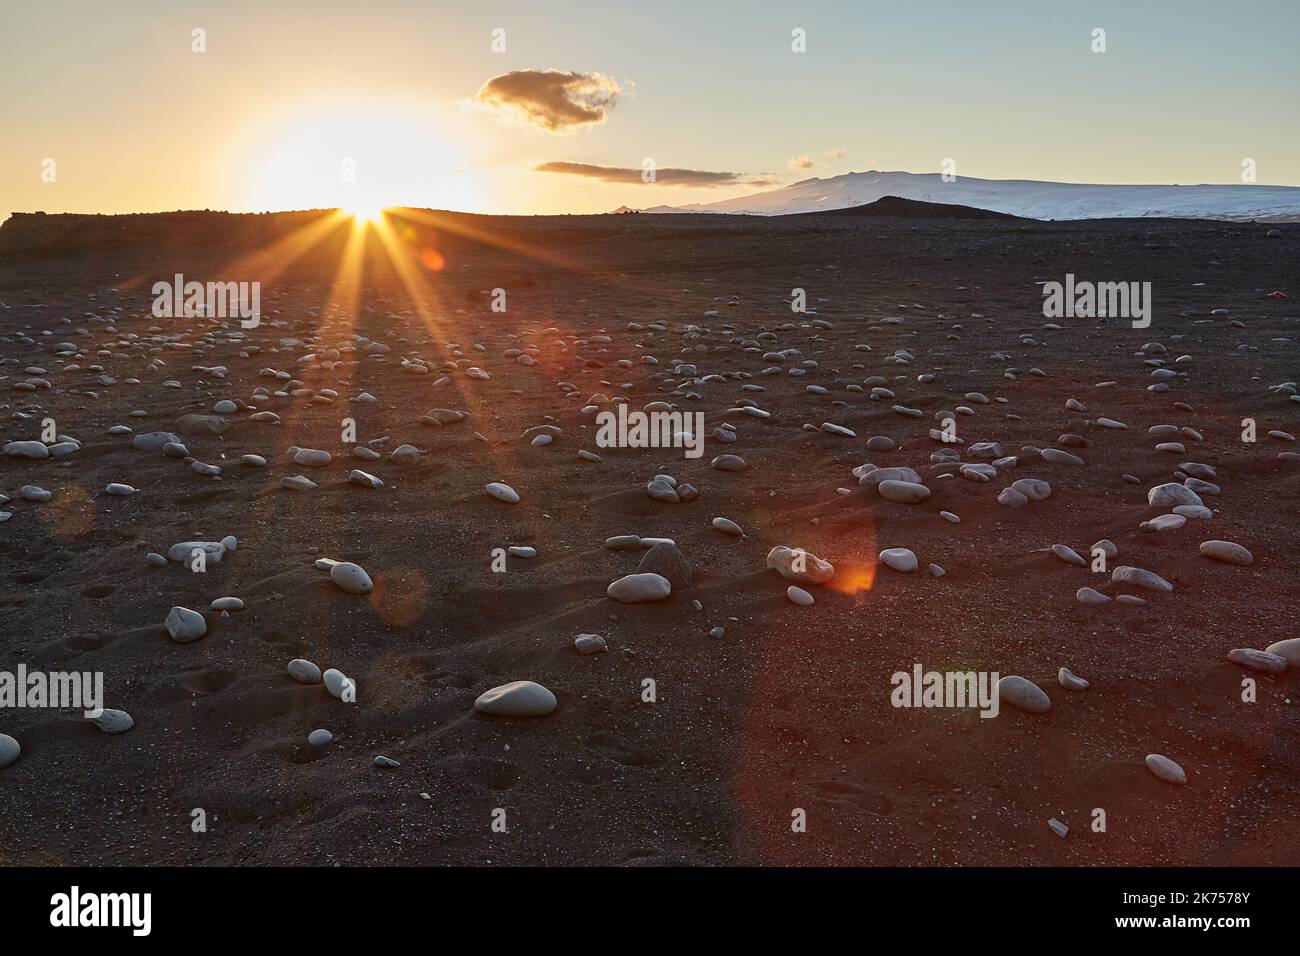 Islandia paisaje playa de arena negra con piedras y llamarada puesta de sol Foto de stock